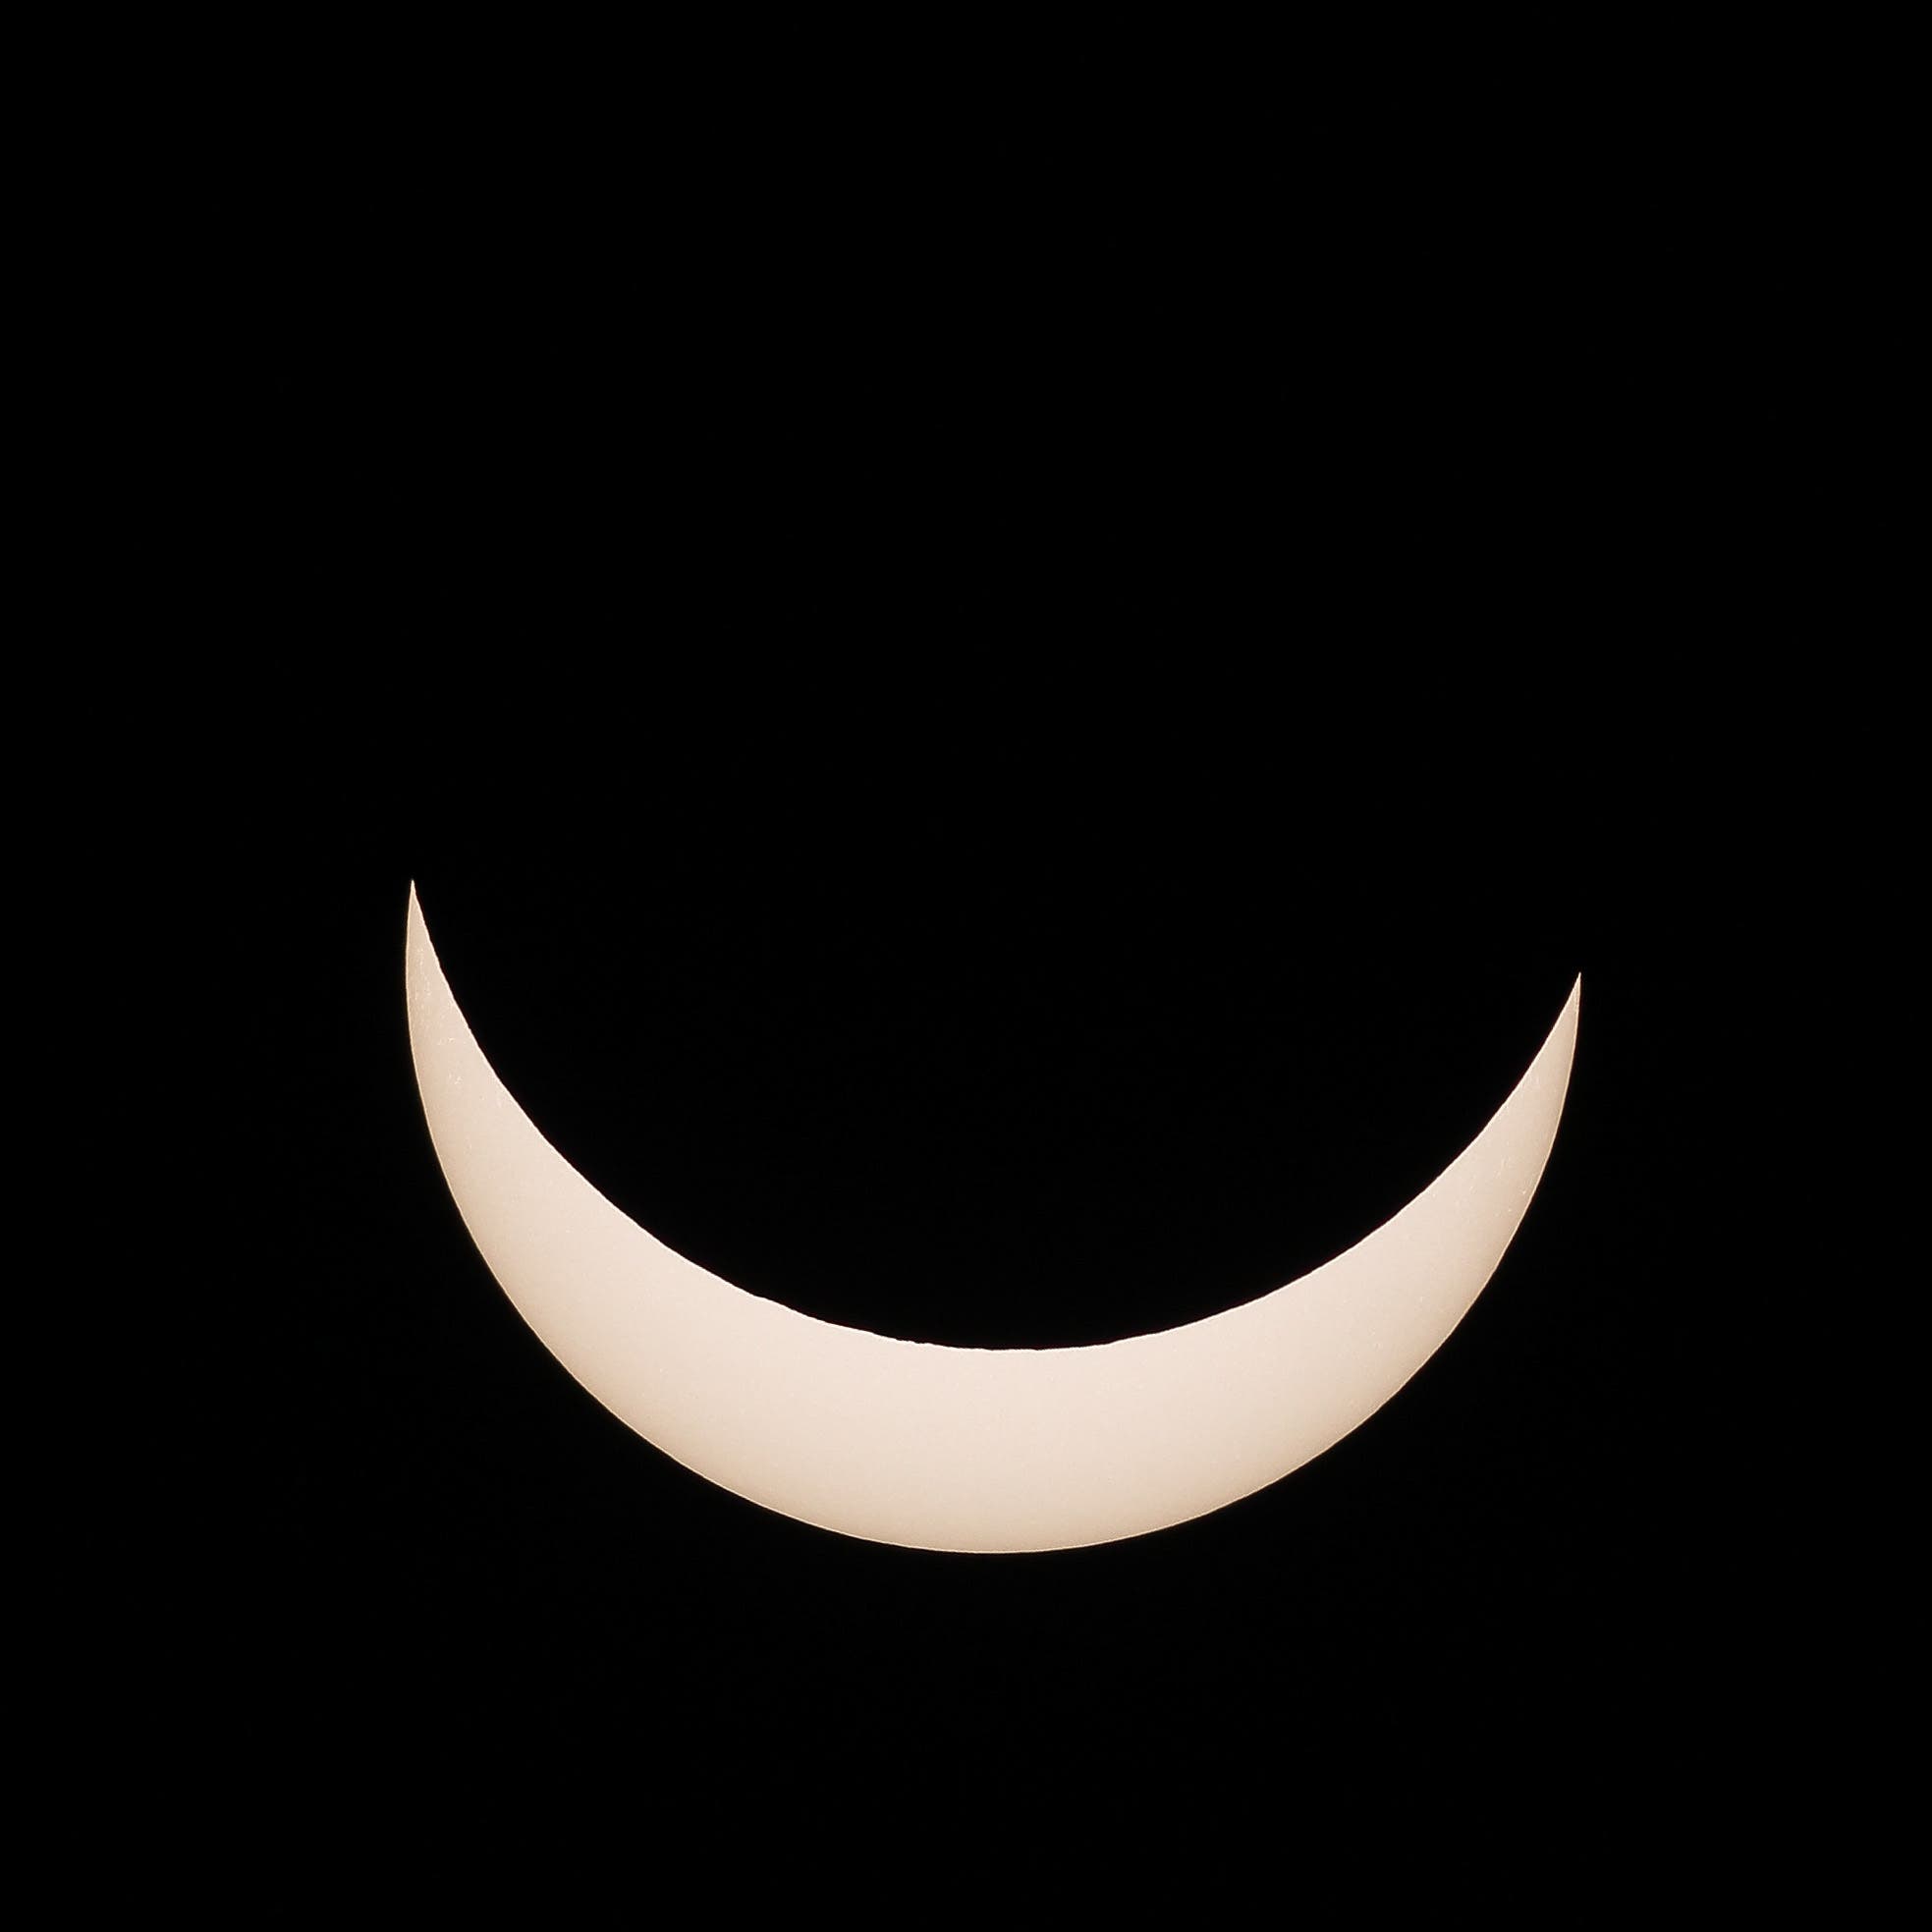 Sonnenfinsternis 20. März 2015